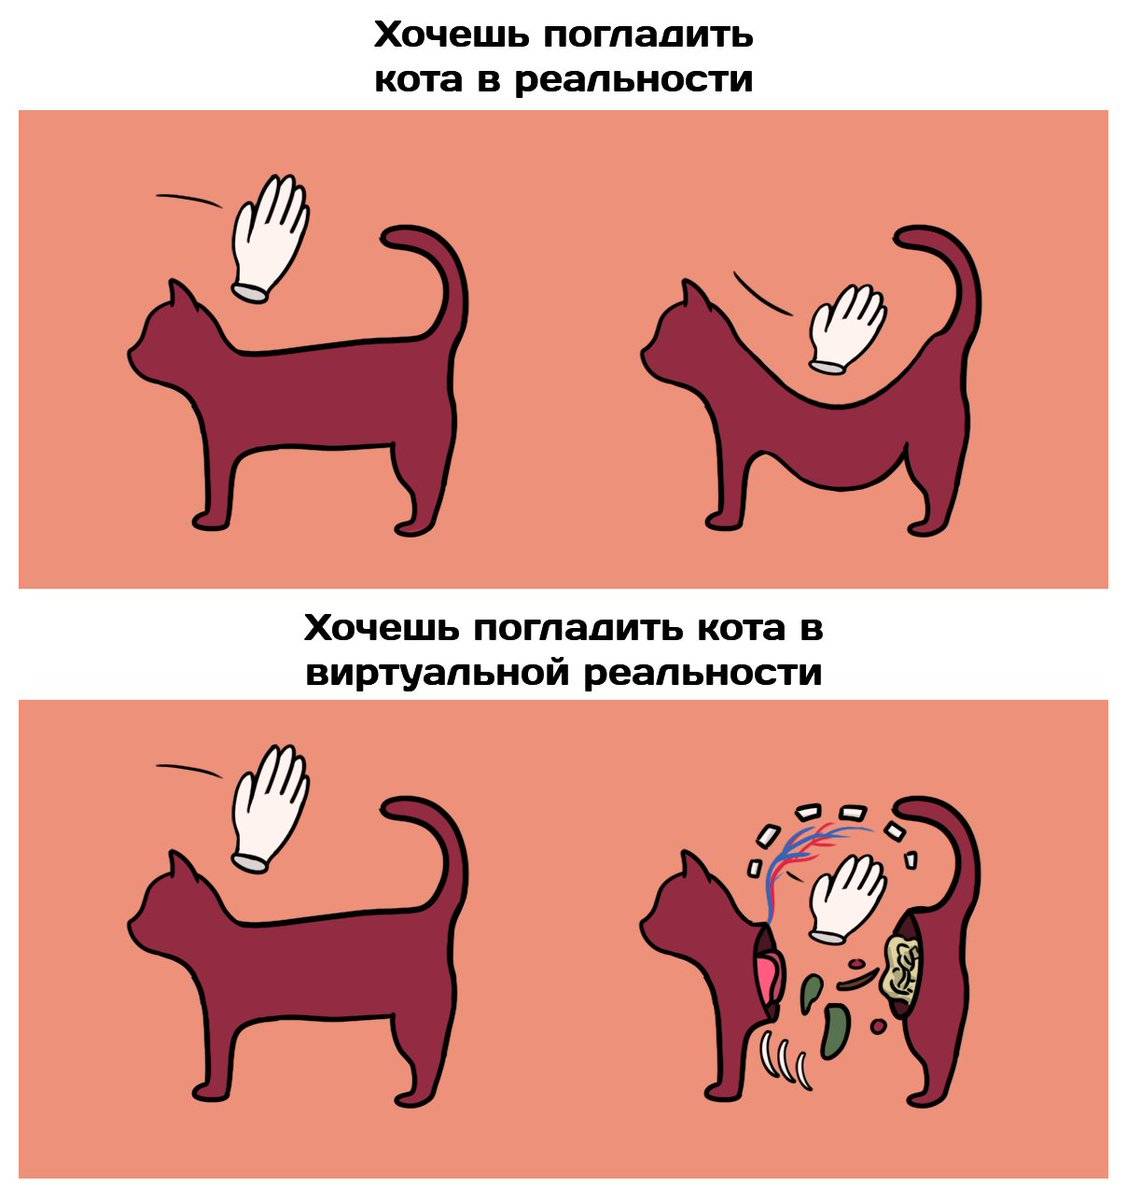 Dobropesik.ru - воротник для кошек и его назначение